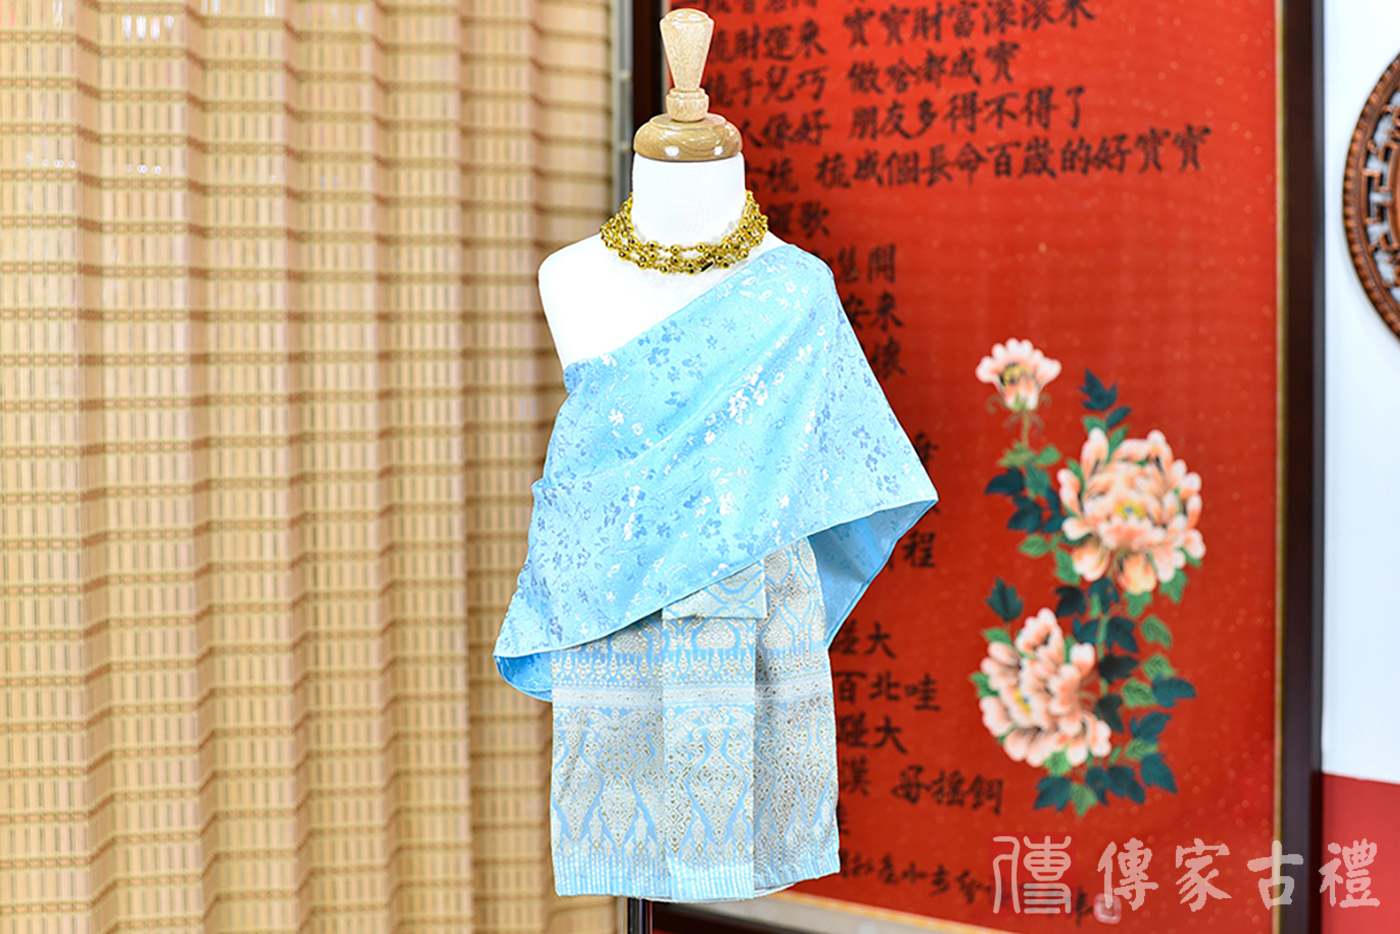 2024-02-23小孩皇室泰服古裝禮服。淺藍色的紋路上衣搭配藍色泰國圖案裙裝的泰式古裝禮服。照片集